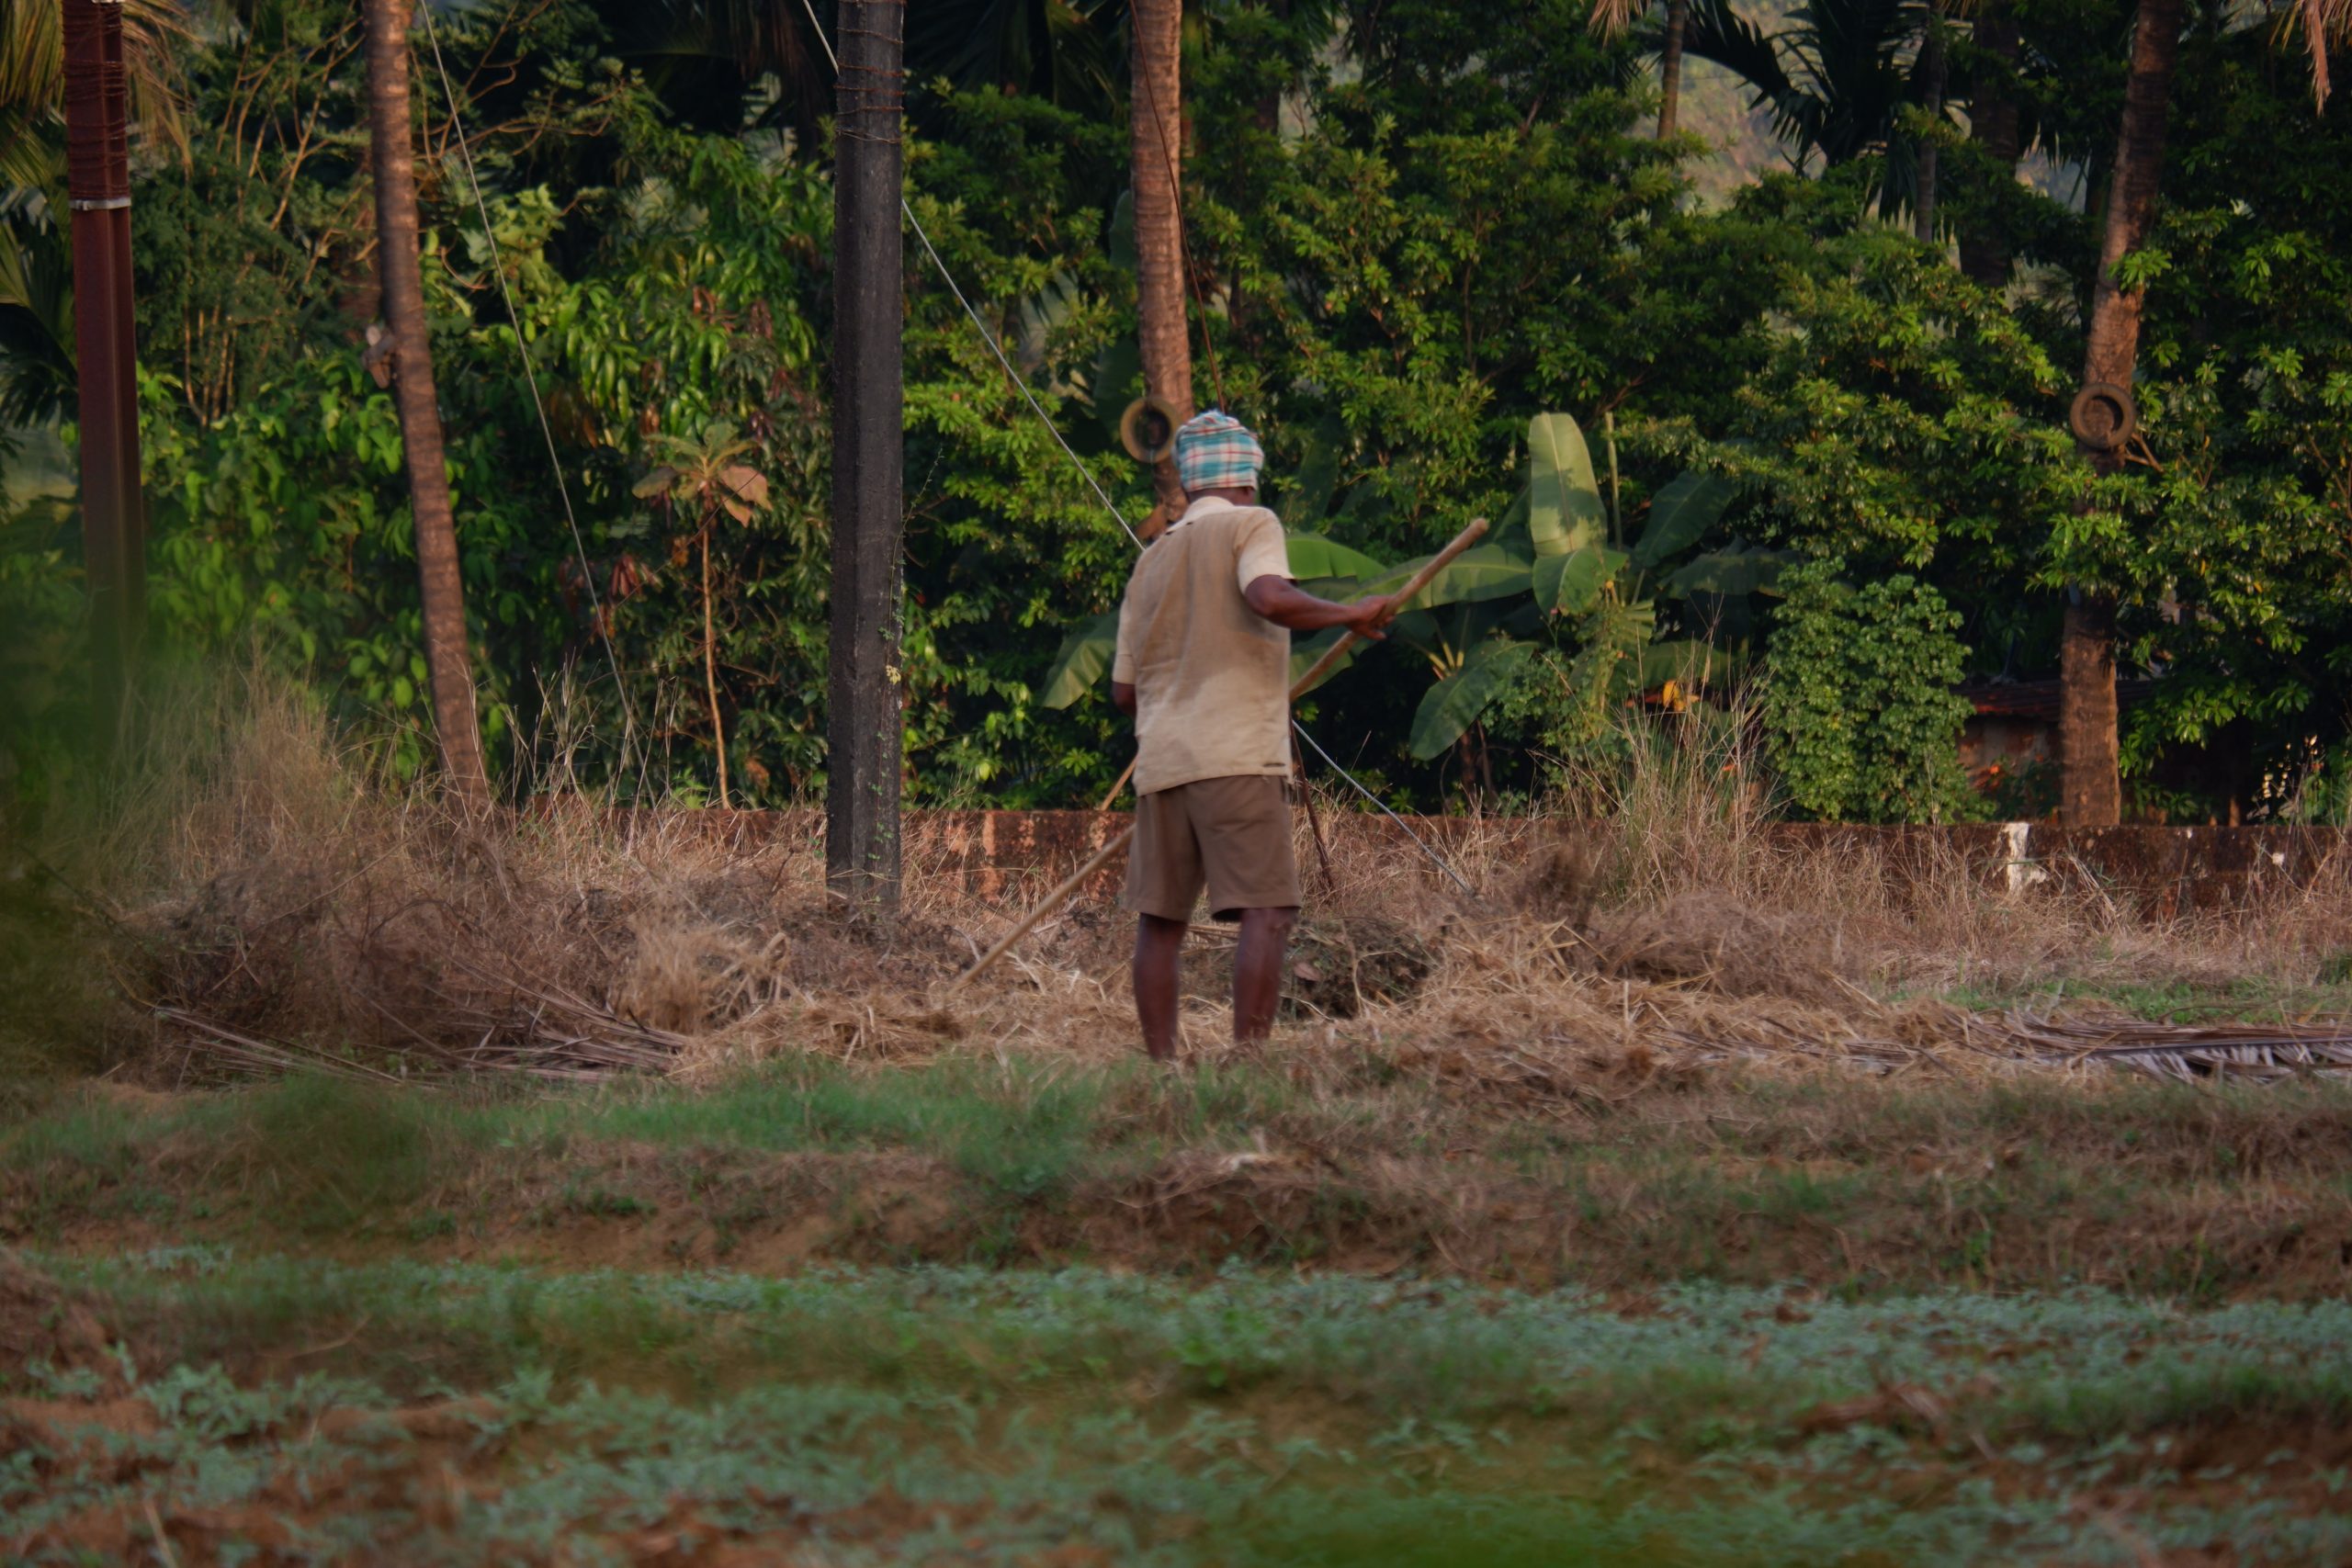 A farmer working in grassland